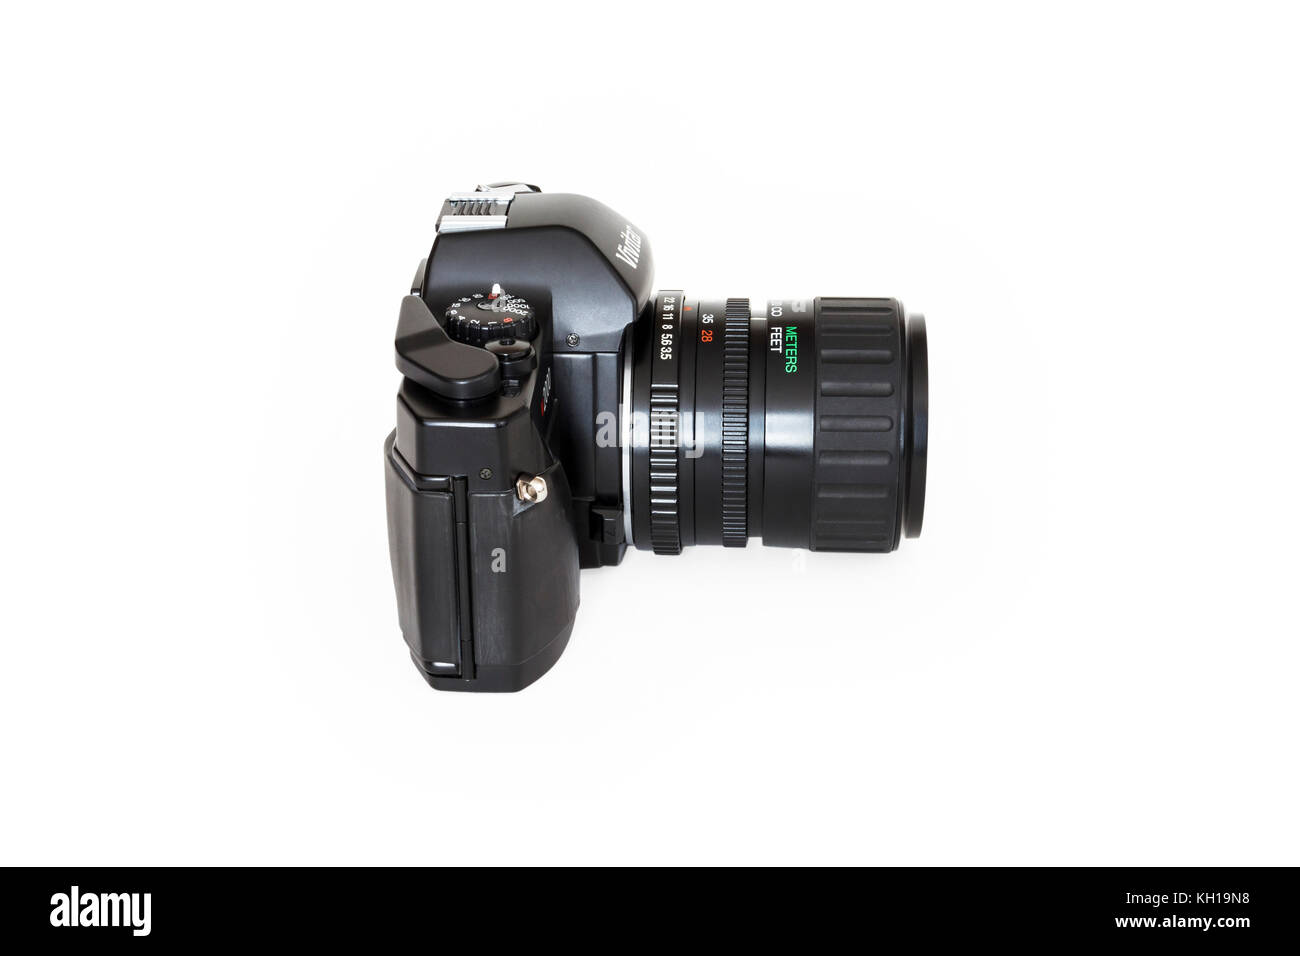 Vivitar V2000 SLR 35mm appareil photo, objectif zoom 28-70mm, 1980, isolé sur un fond blanc. Banque D'Images